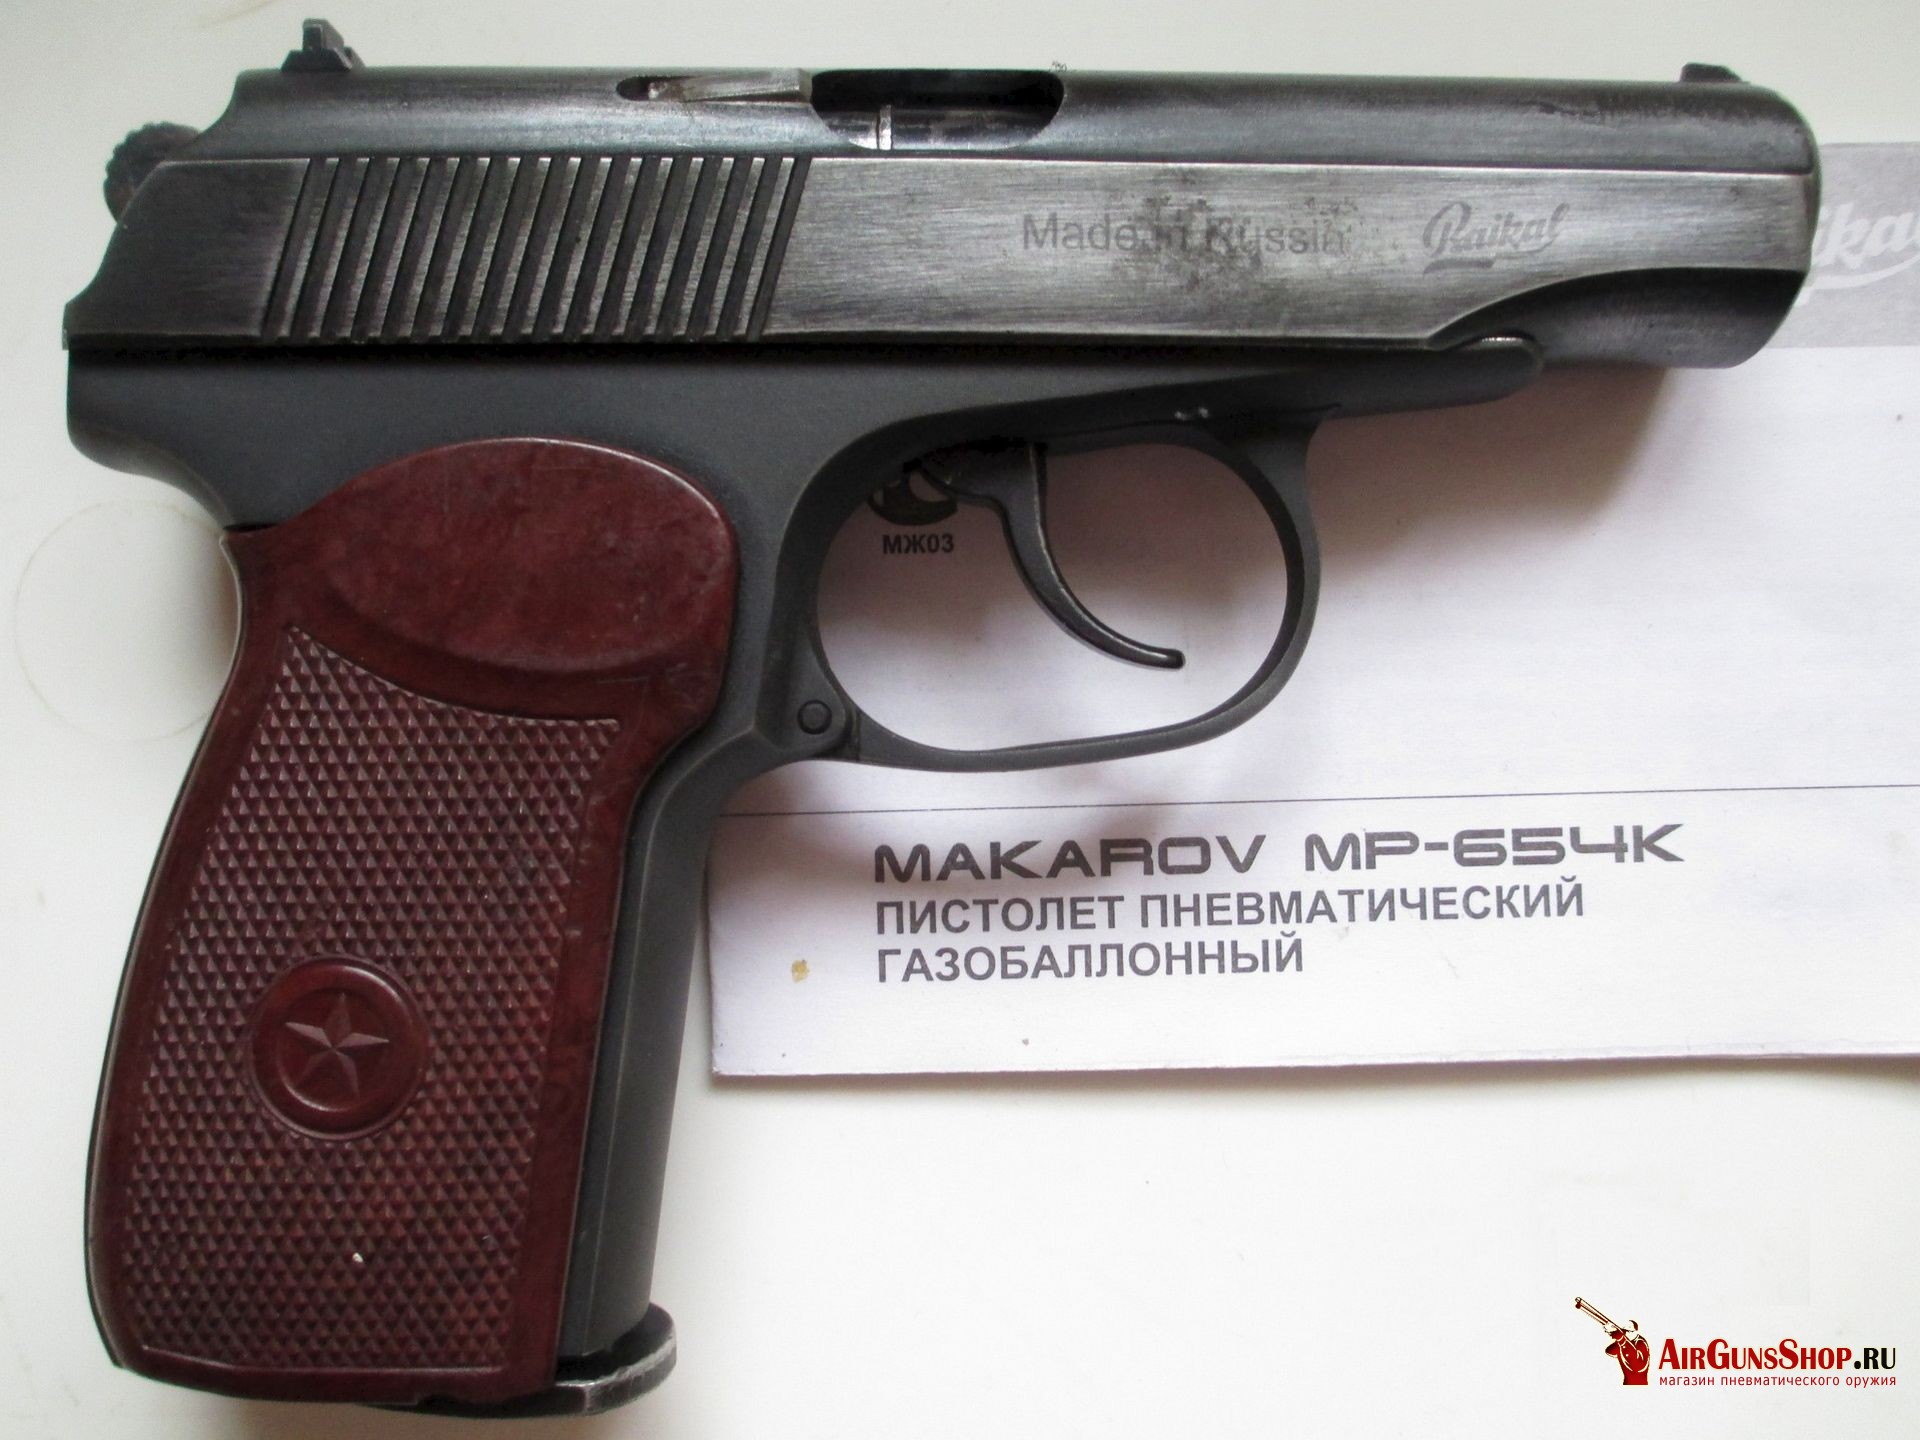 Пистолет Макаров пневматический МР-654К-32